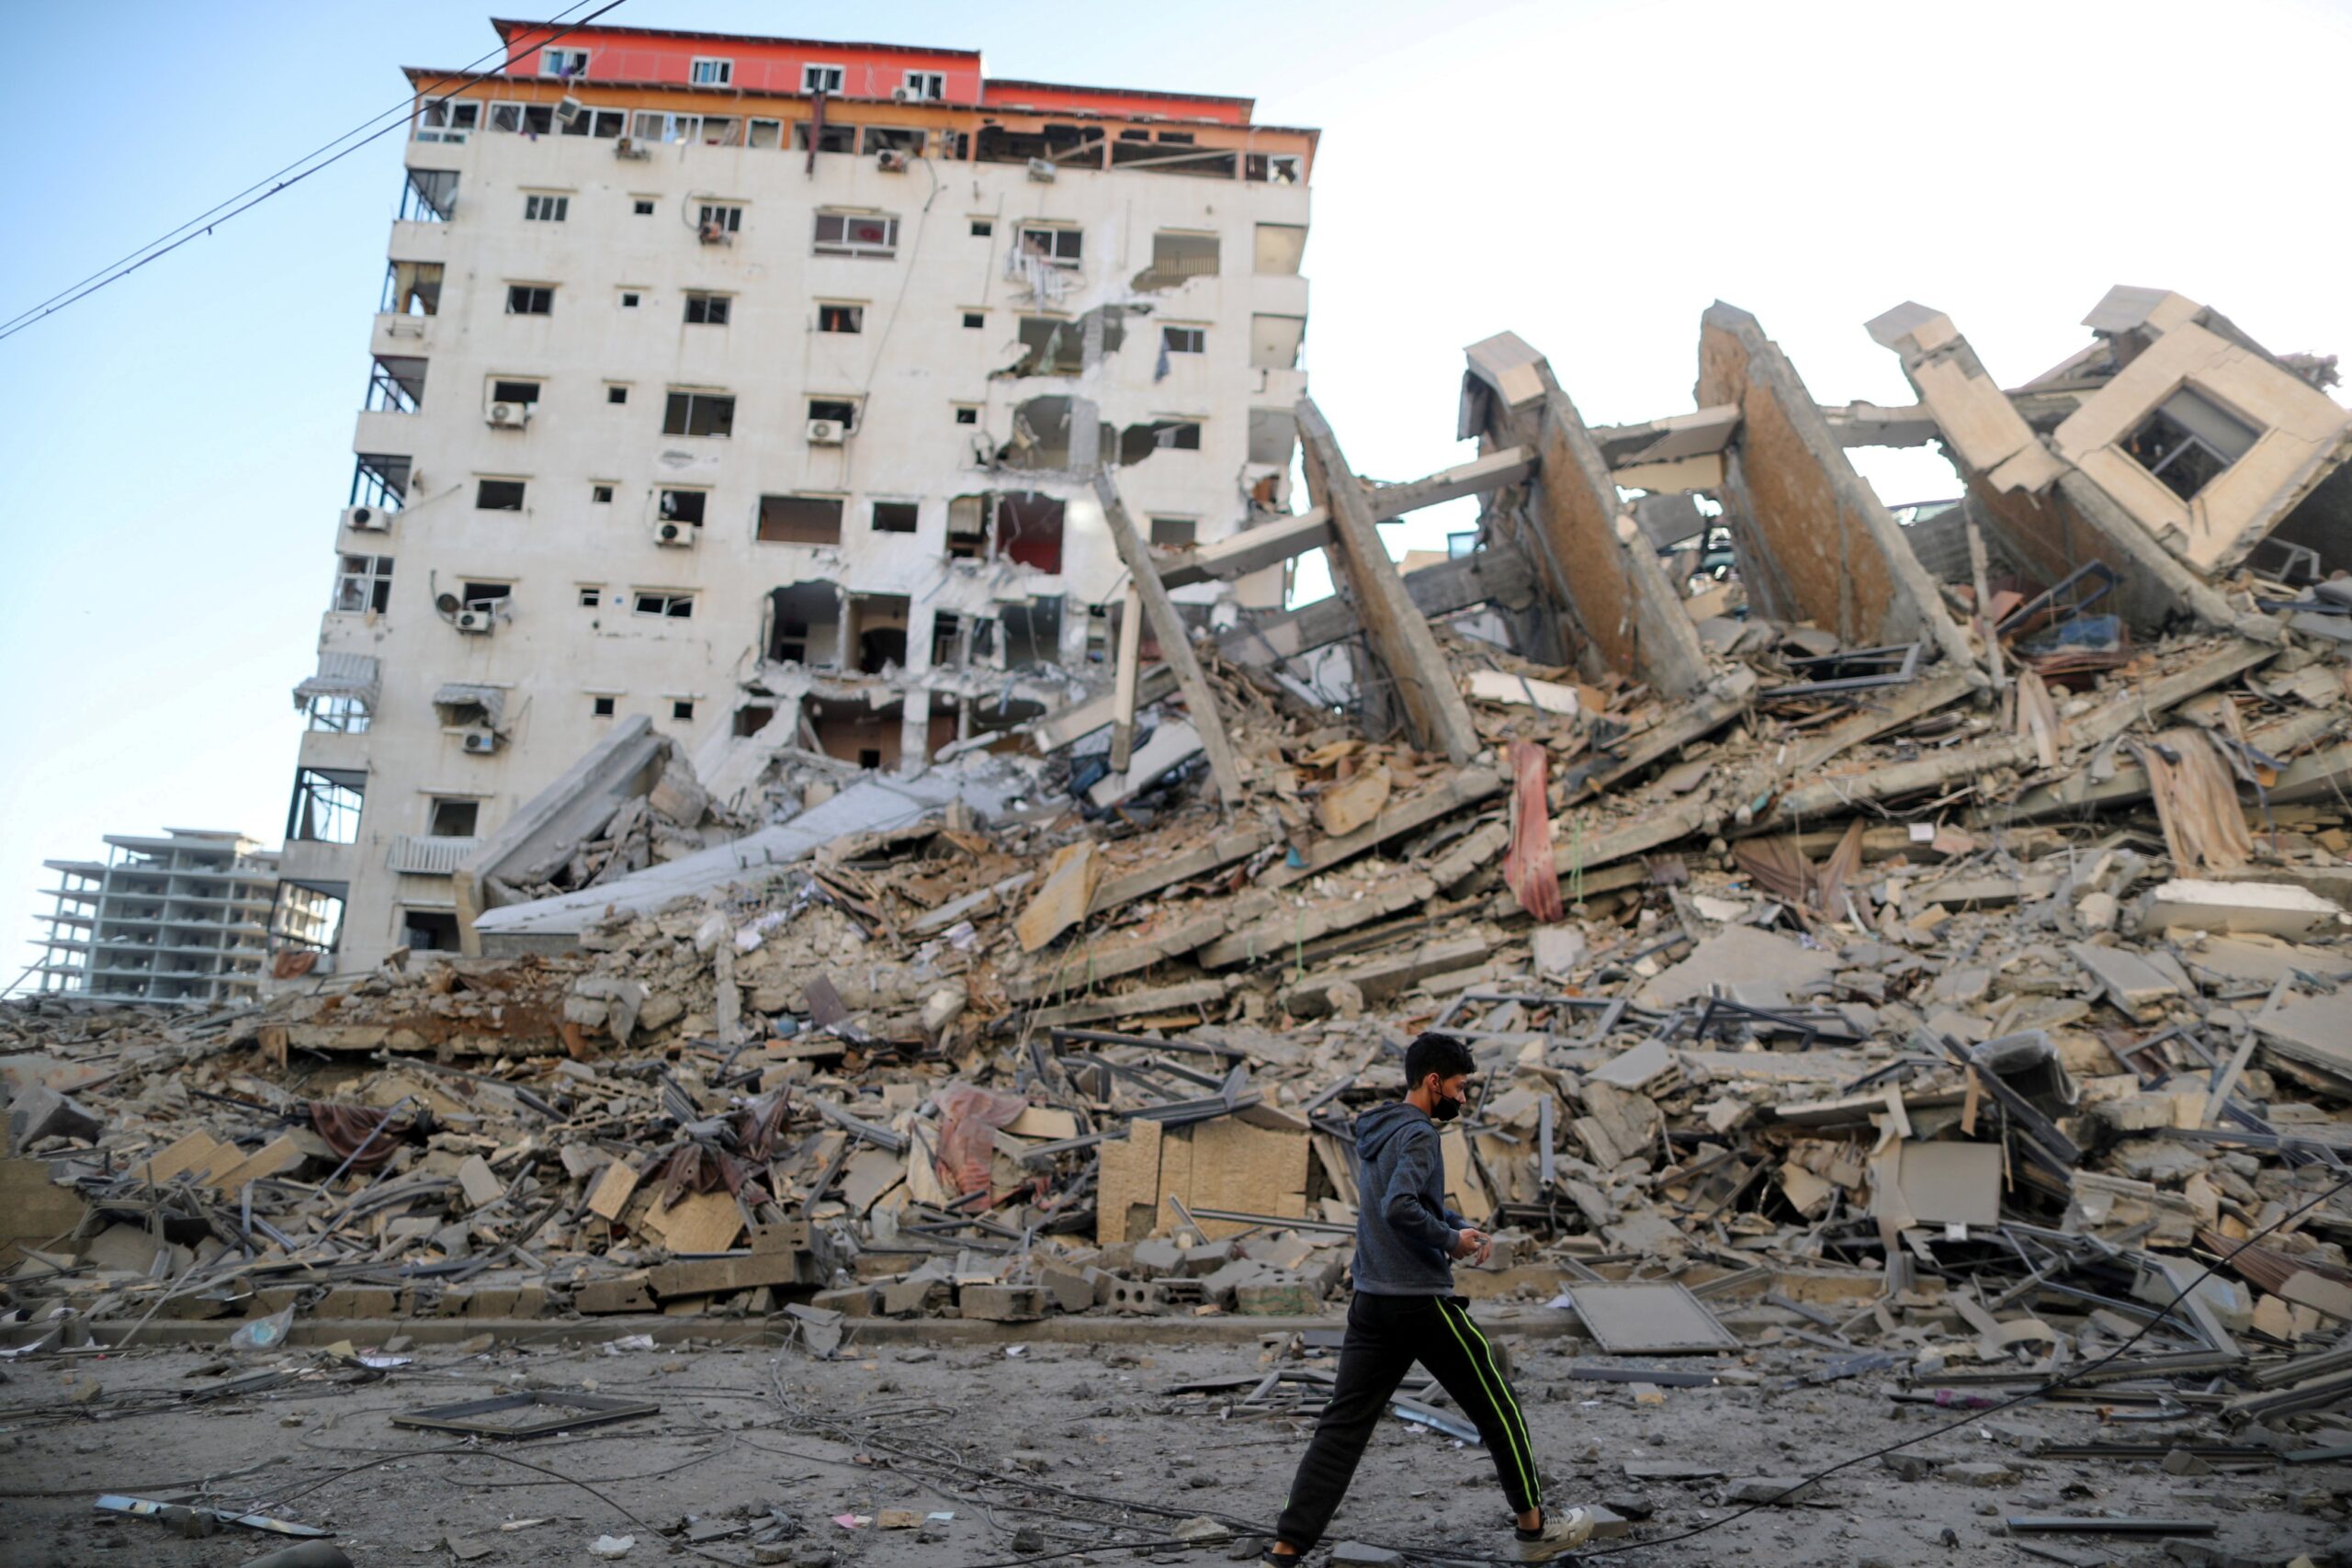 استخدمت الولايات المتحدة حق النقض (الفيتو) ضد قرار في الأمم المتحدة يدعو إلى وقف فوري لإطلاق النار في غزة، وهي خطوة متوقعة تأتي وسط صخب دولي متزايد لإسرائيل لوقف هجومها ضد حماس.